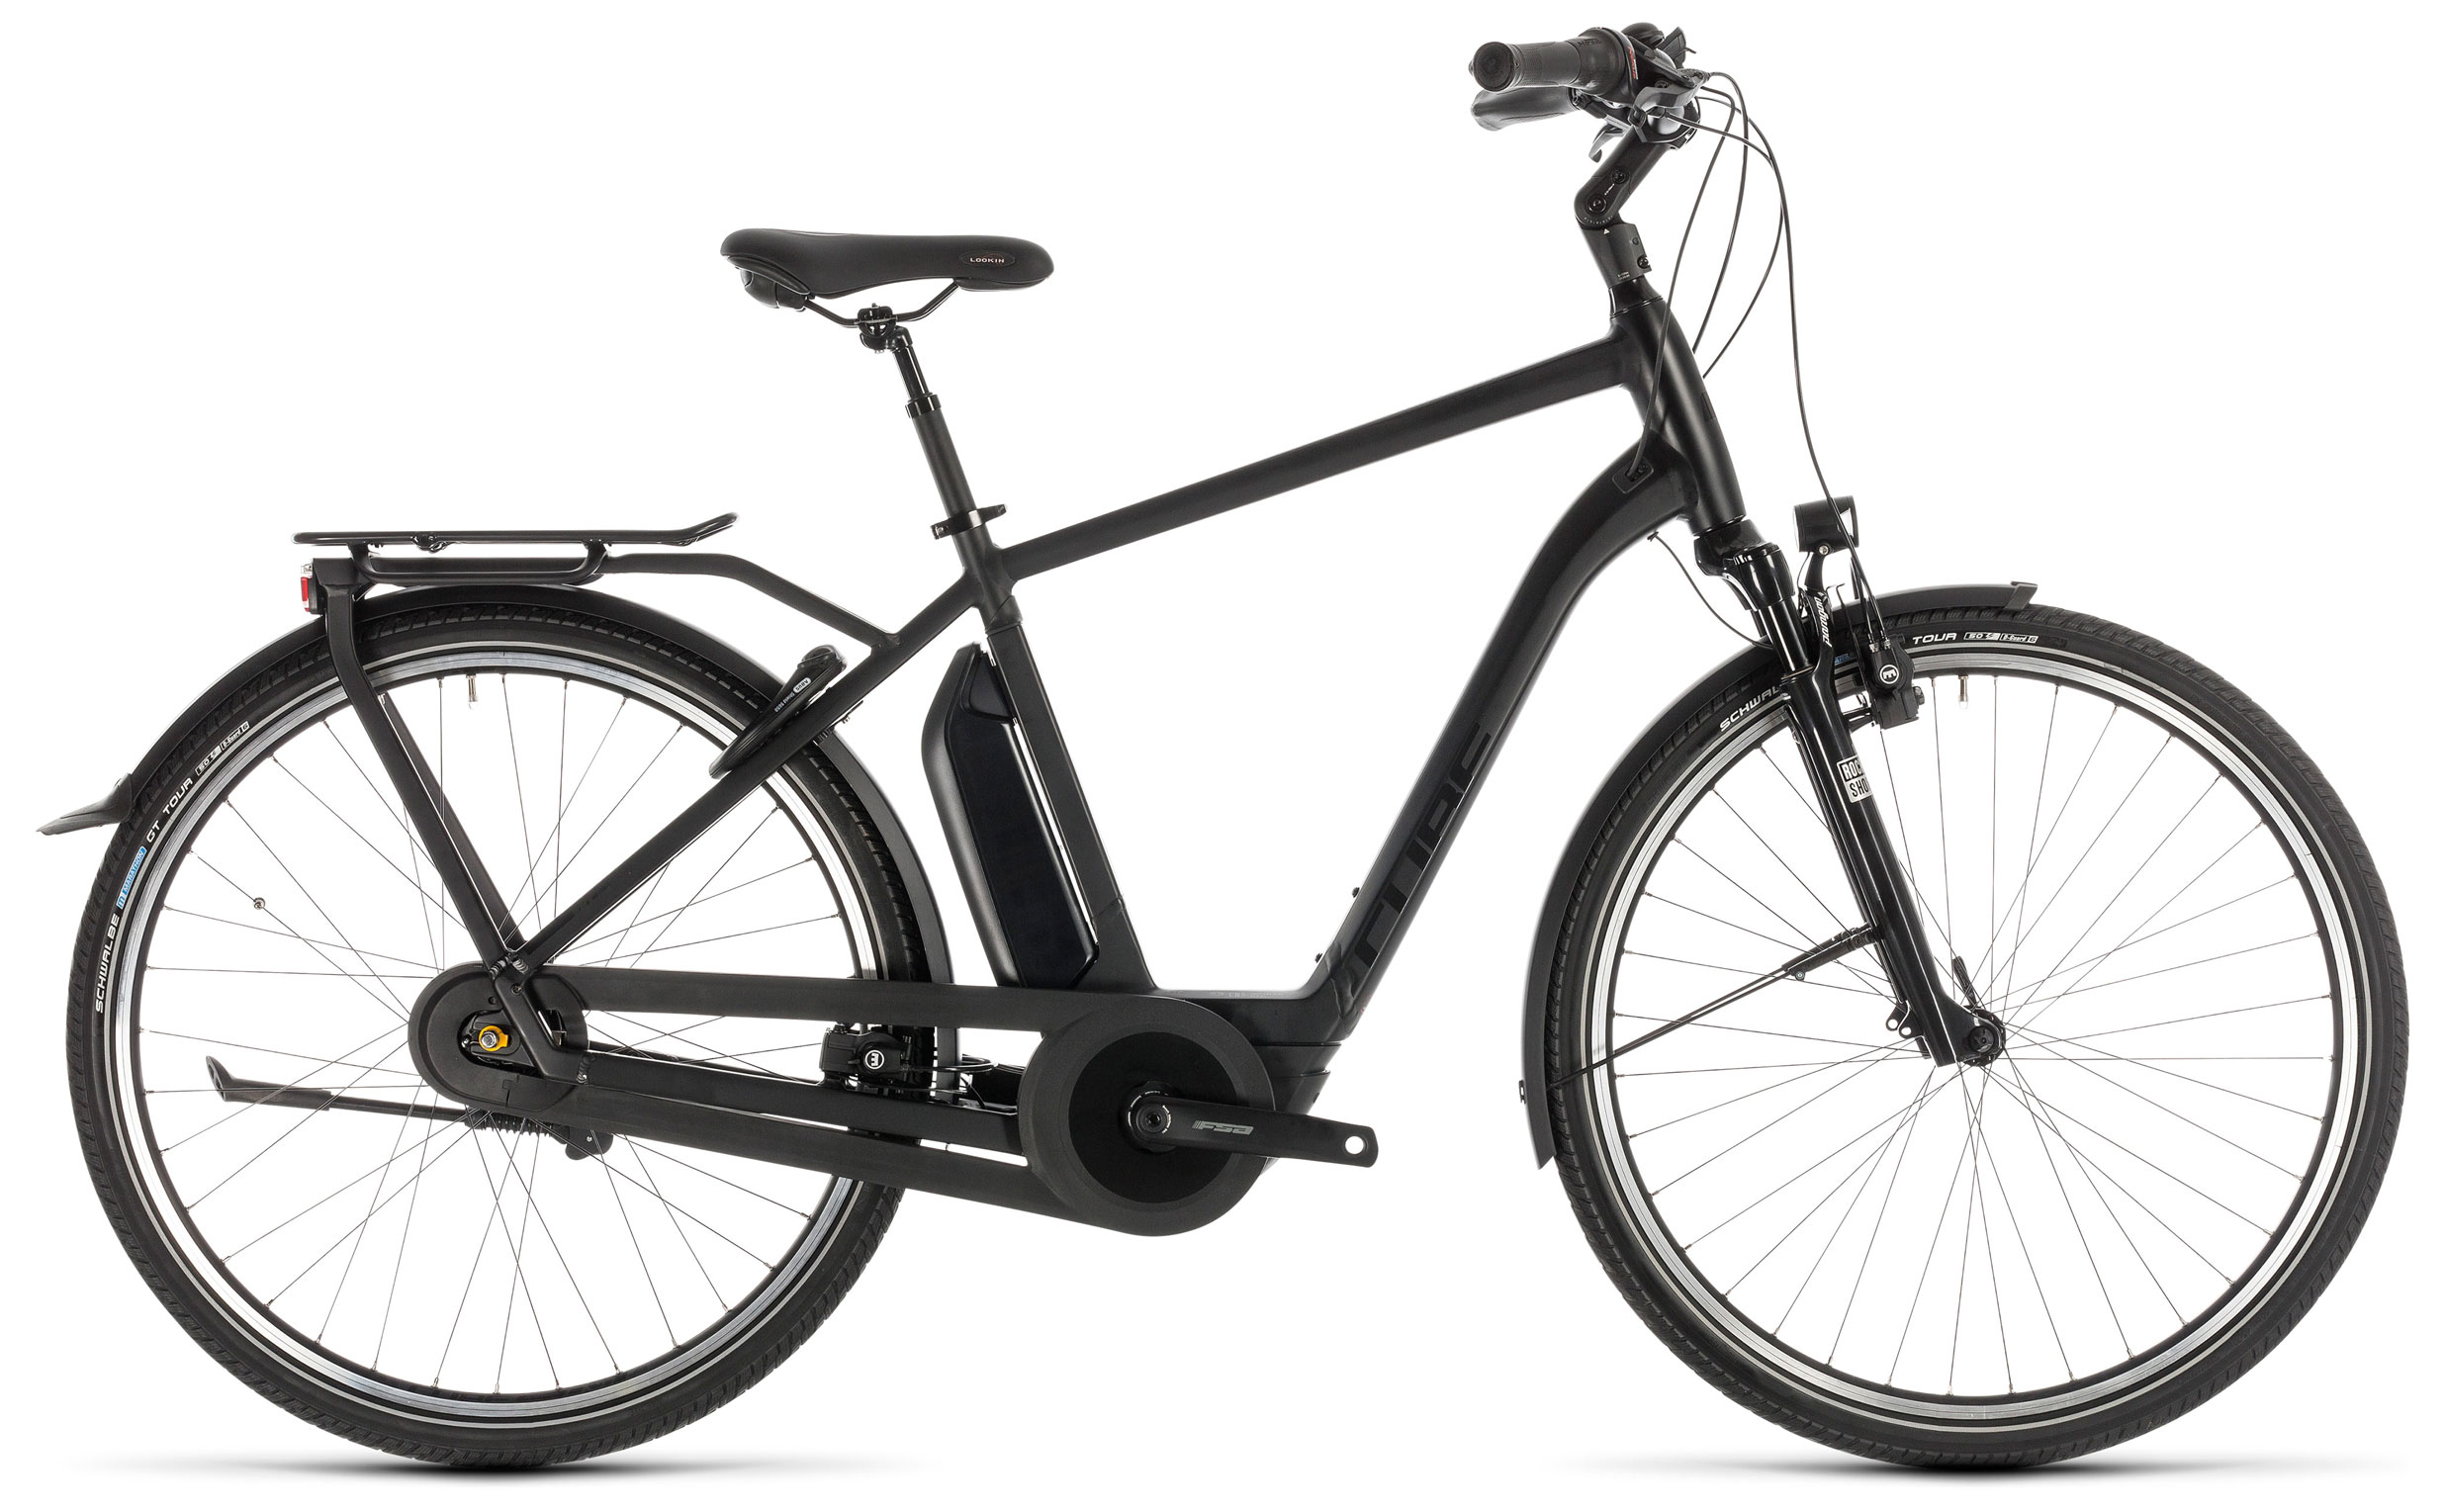  Велосипед Cube Town Hybrid EXC 400 2019